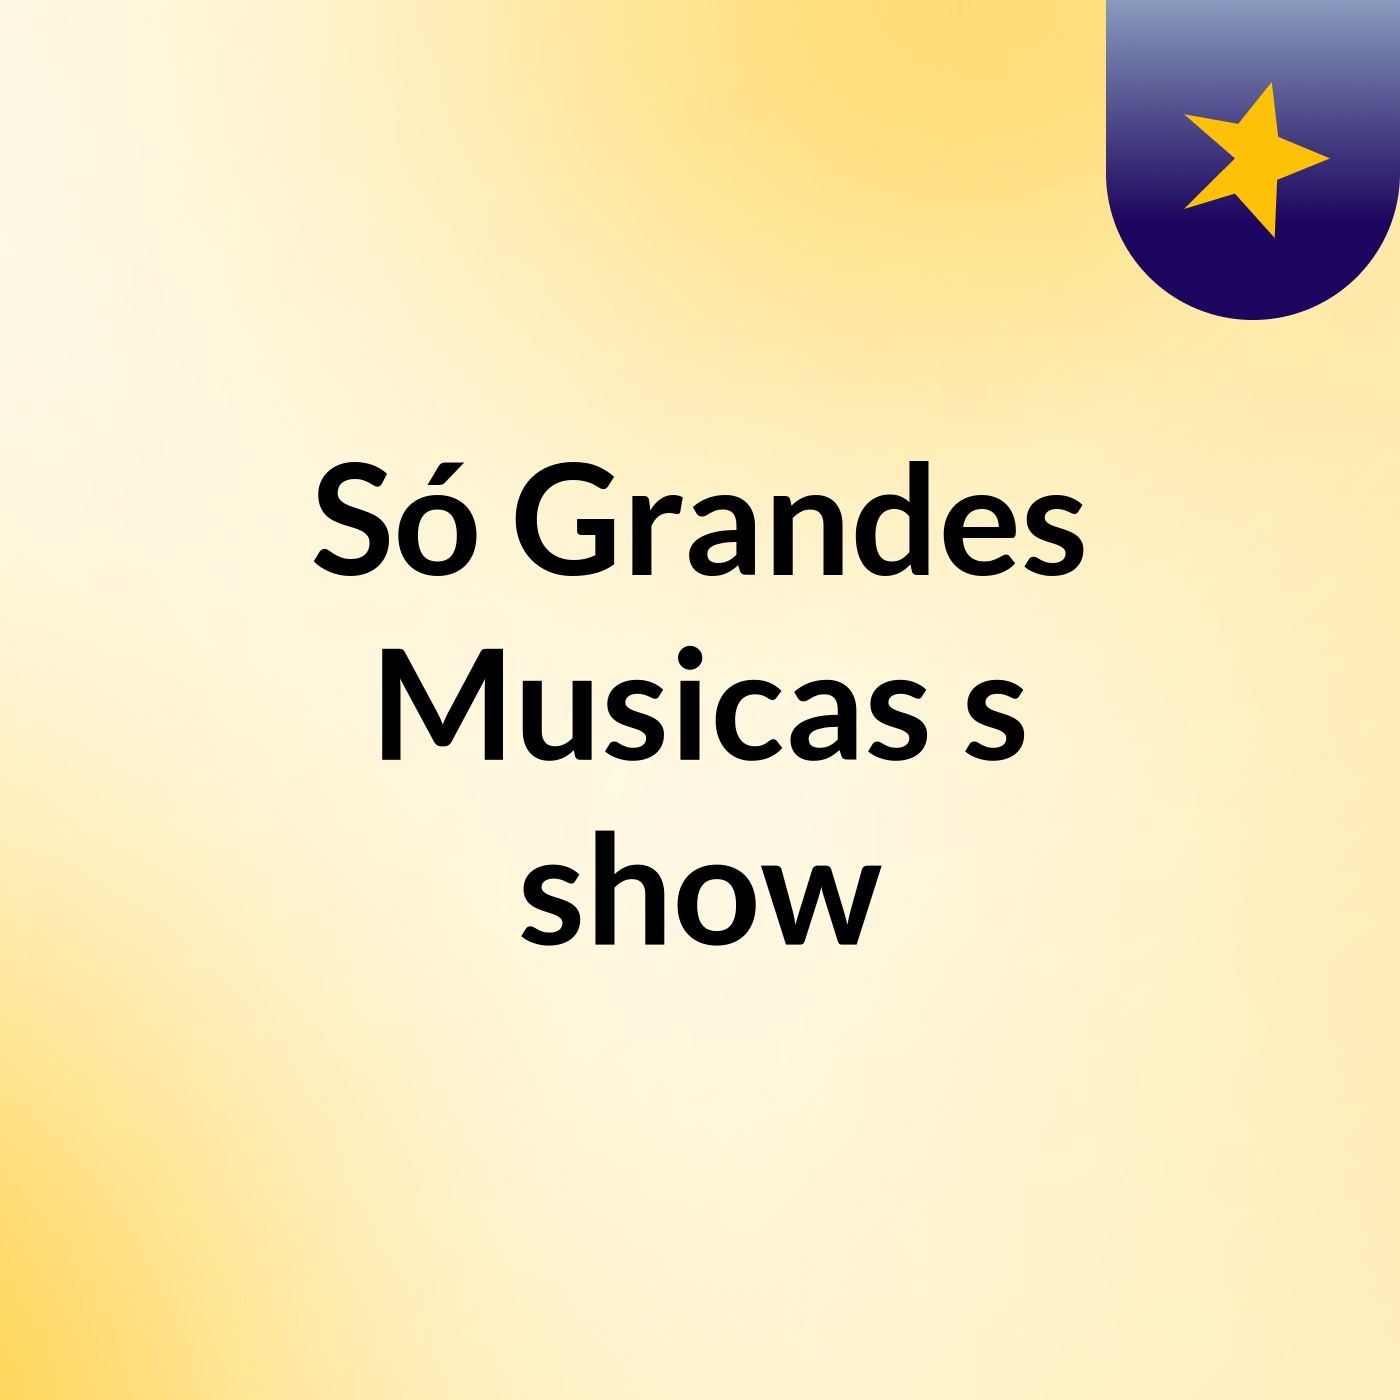 Só Grandes Musicas's show